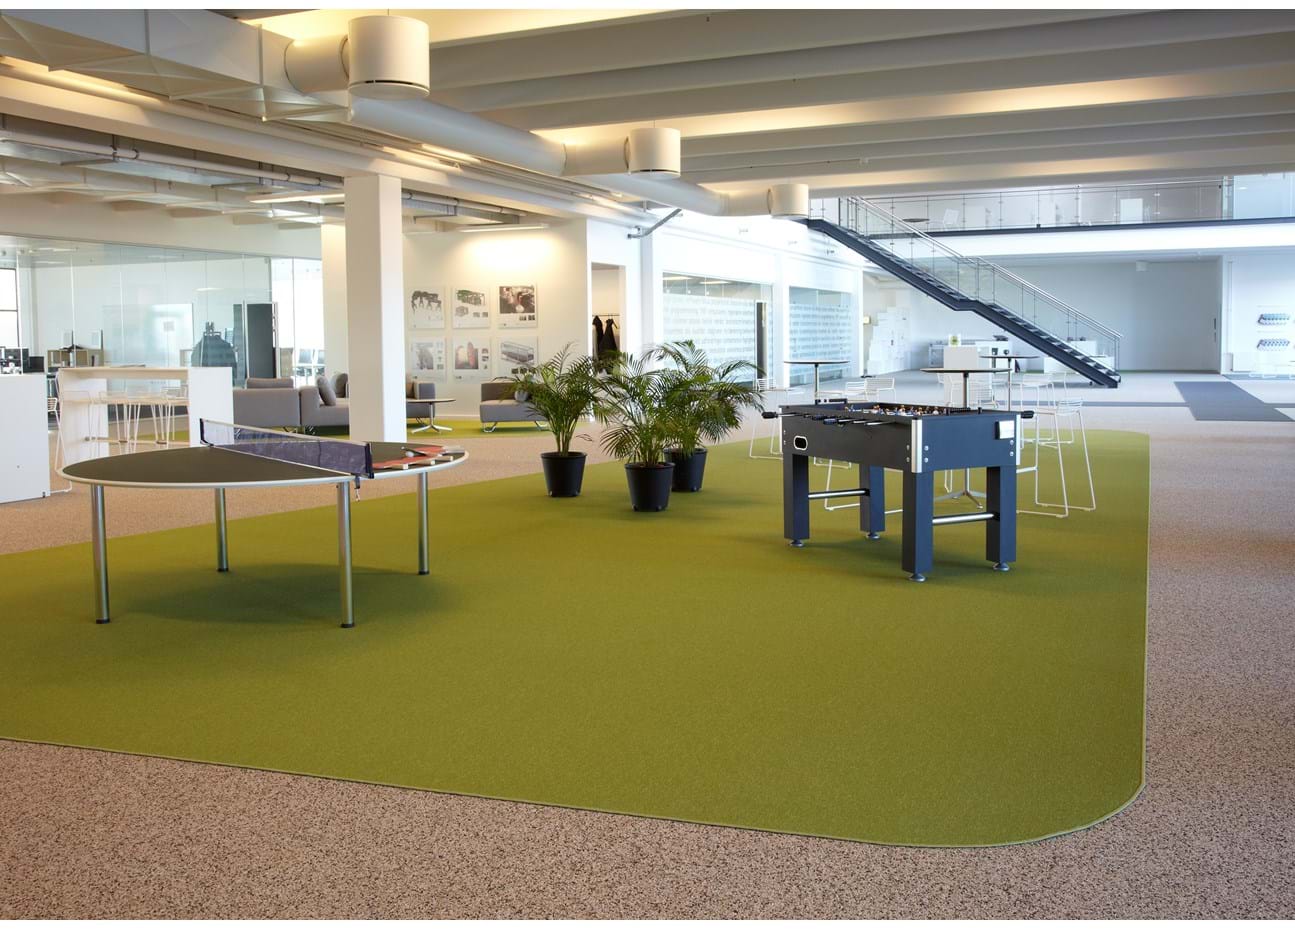 afpasset Fraster tæppe grøn på kontor